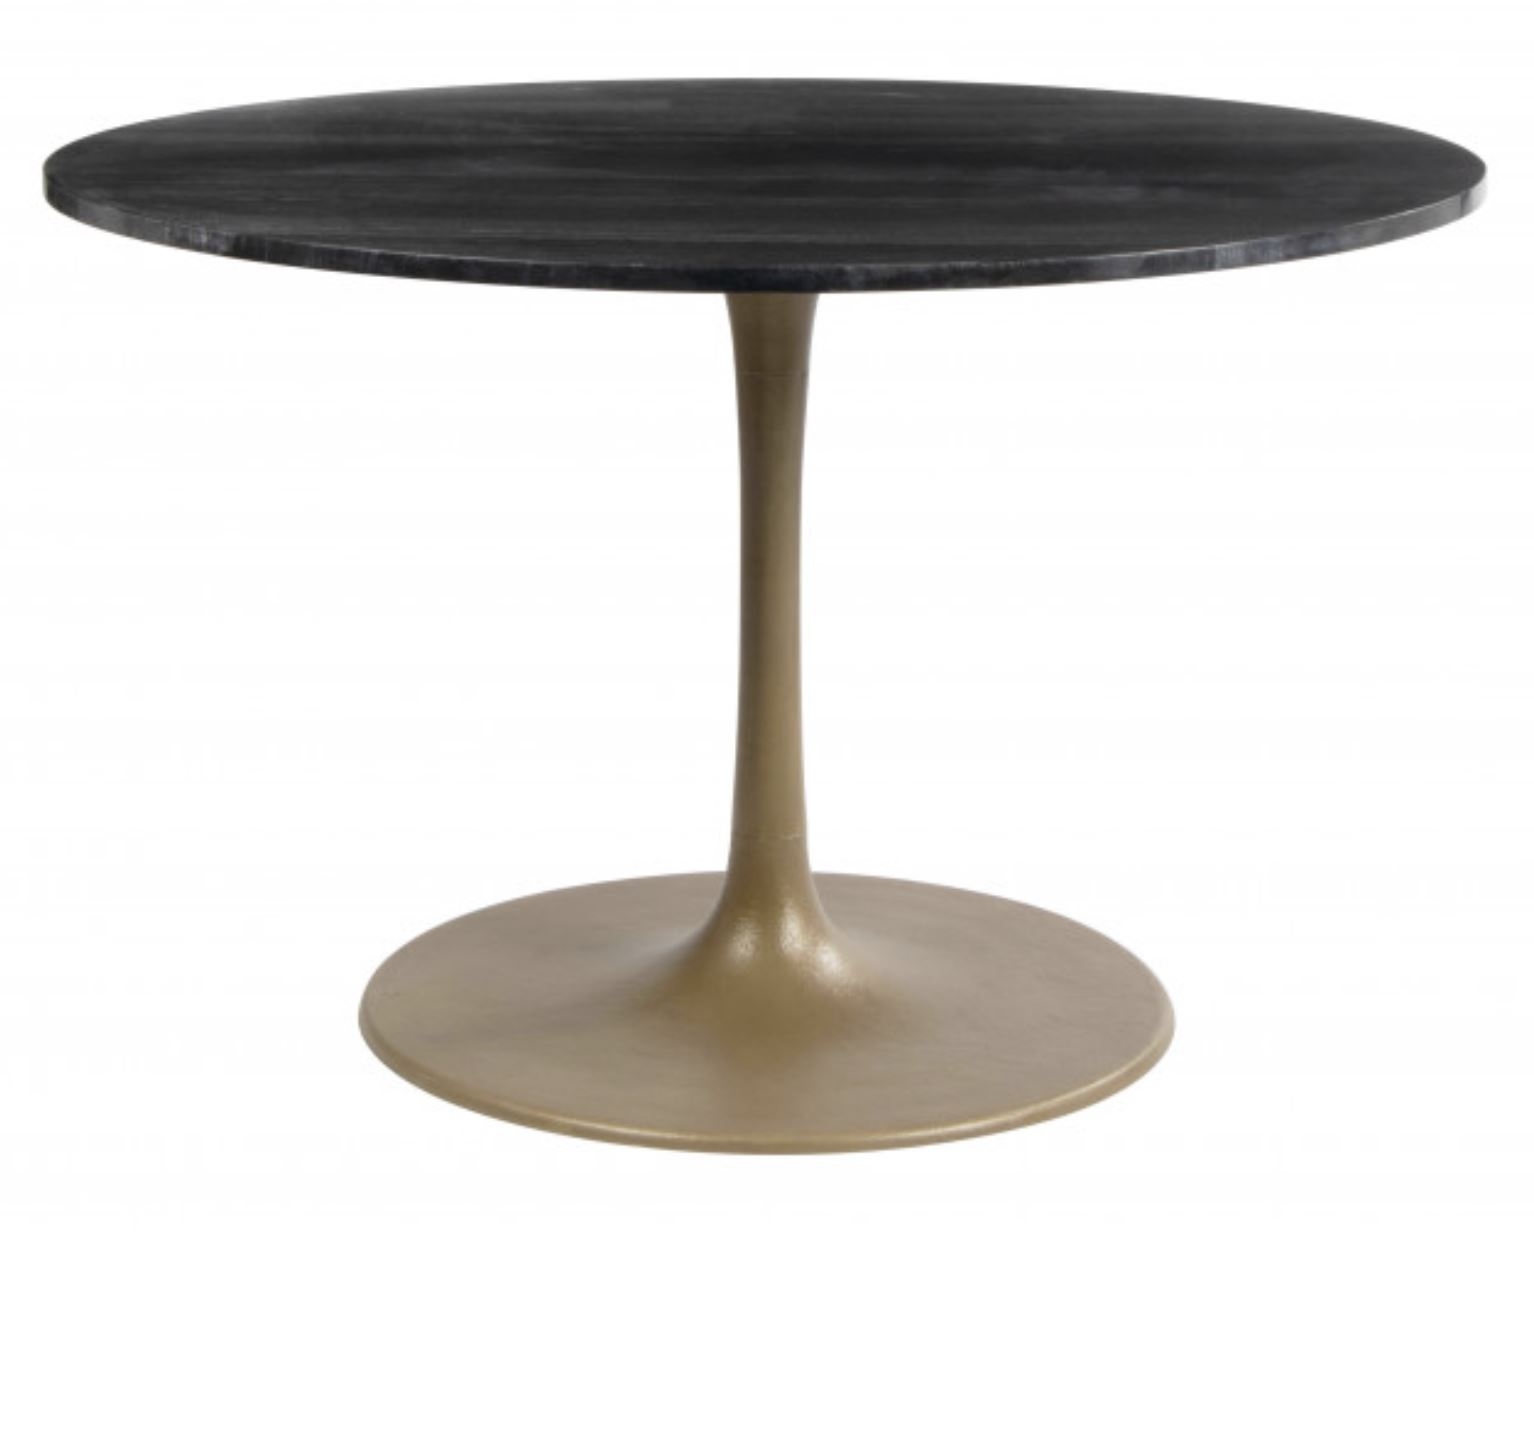 Saber Dining Table, Black & Gold - Image 0